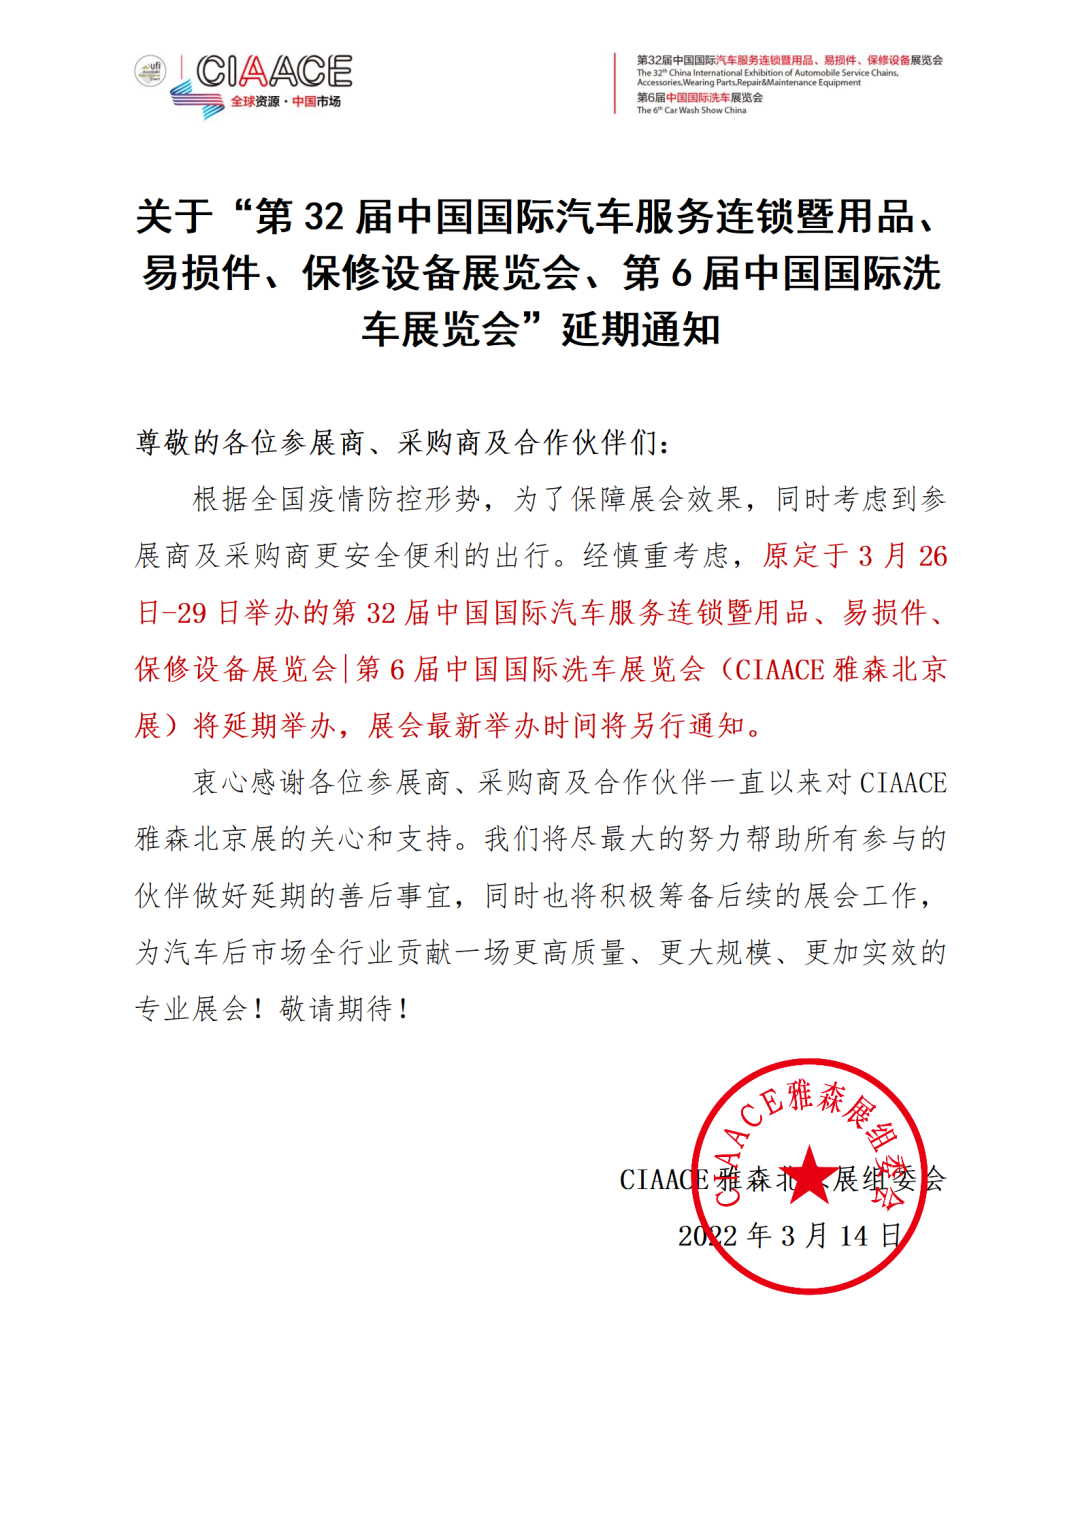 【延期公告】关于第32届雅森北京展延期通知